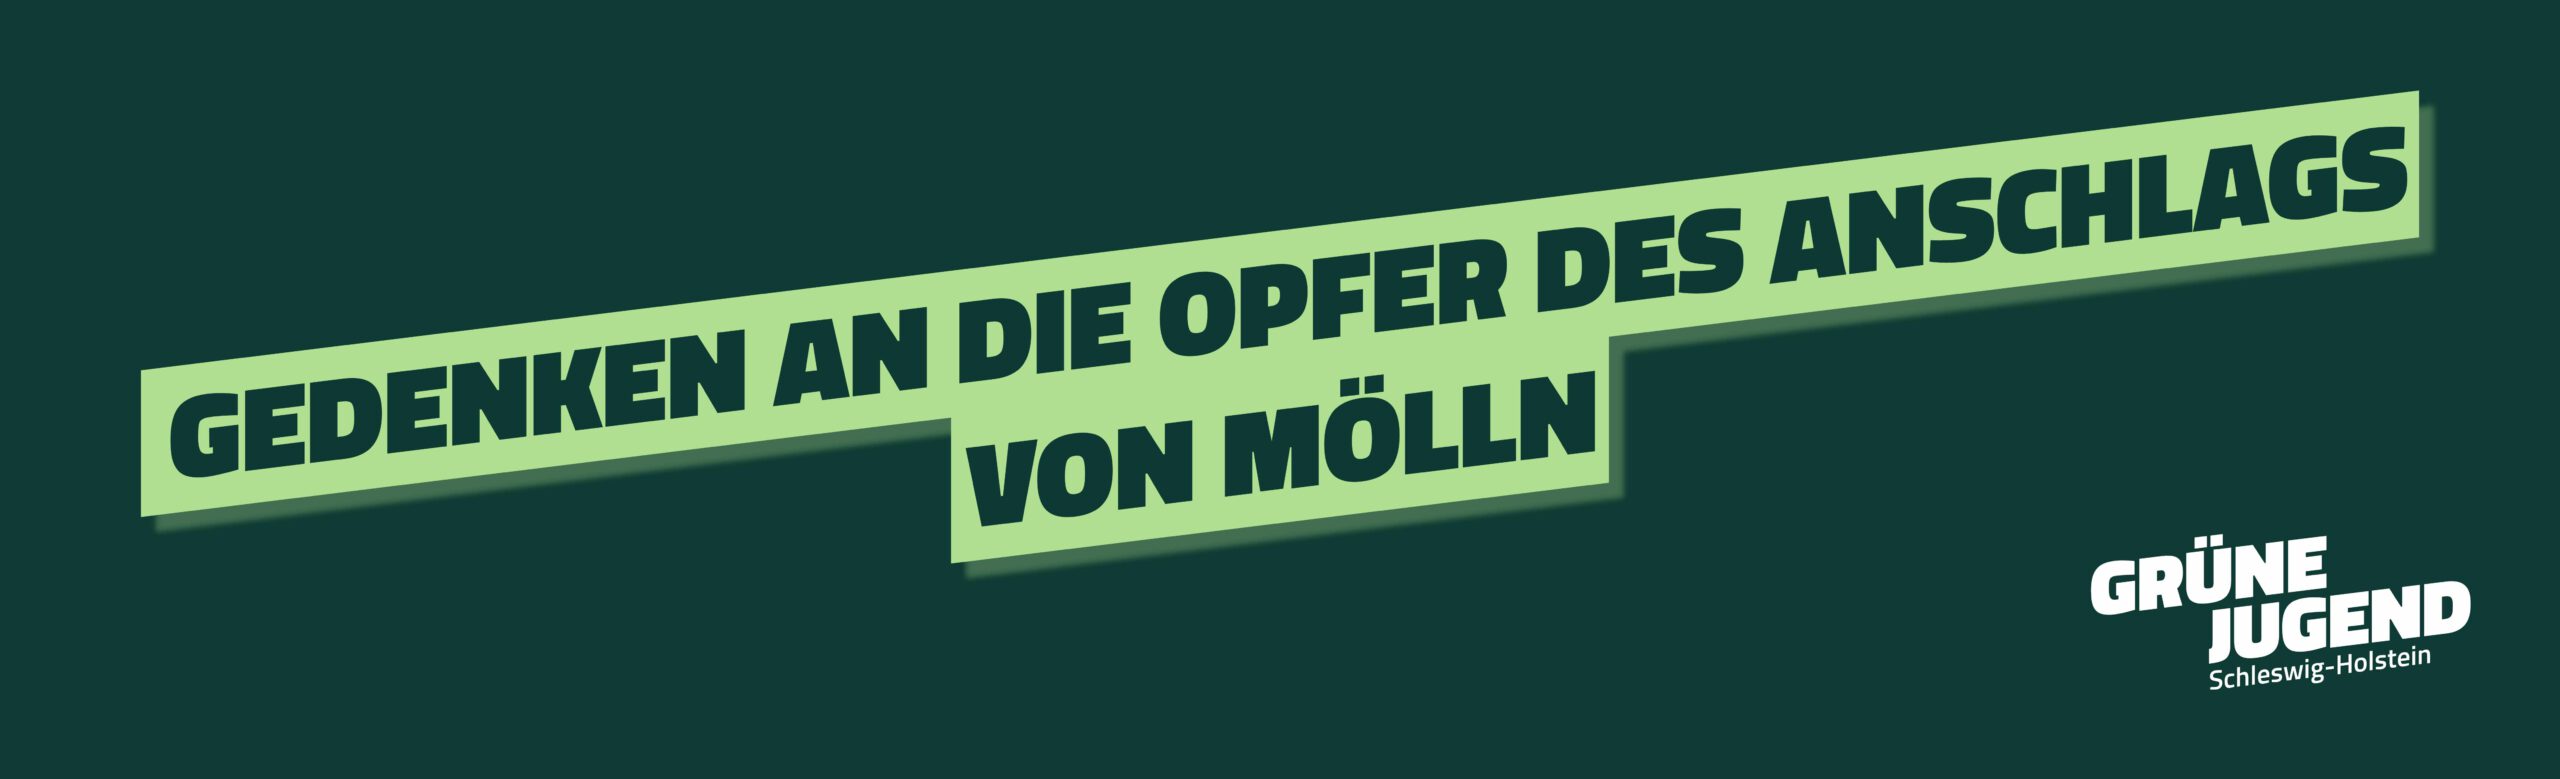 Gedenken an die Opfer des Brandanschlags von Mölln – Rechtsextremismus konsequent bekämpfen!